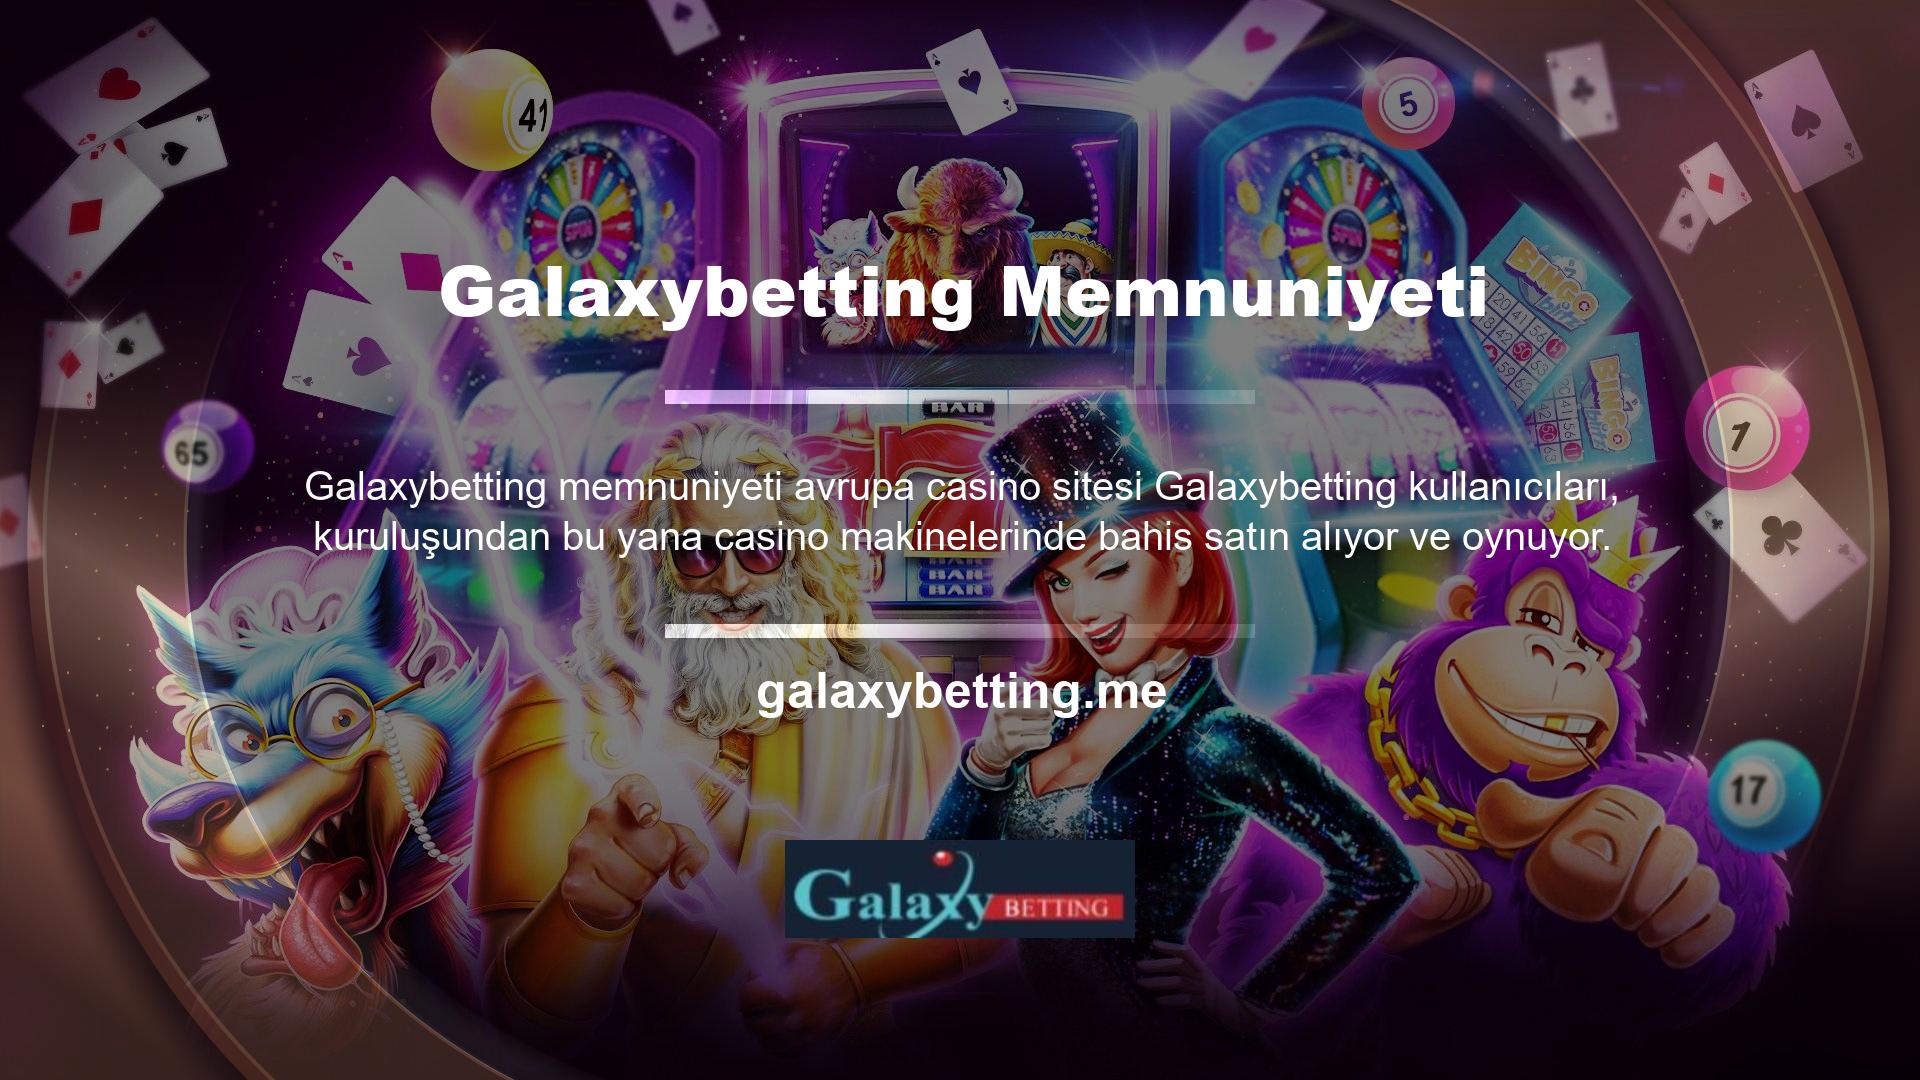 Avrupa casino sitesi Galaxybetting kullanıcı özelliklerinden yoksun olmaması çok önemlidir